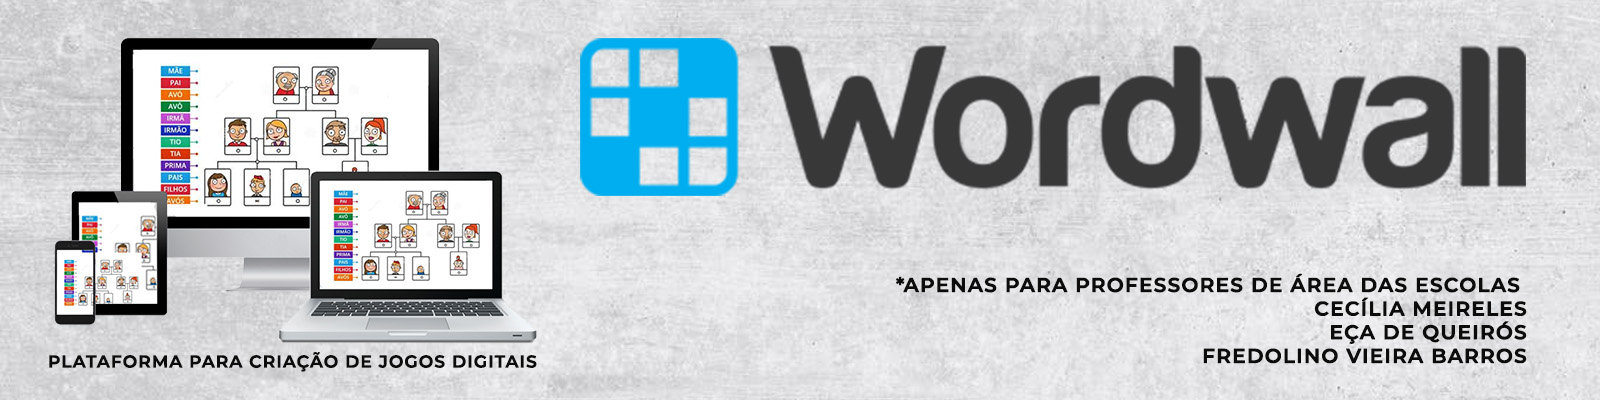 Um site com diversos jogos gratuitos. Wordwall é o nome dele. As nossa